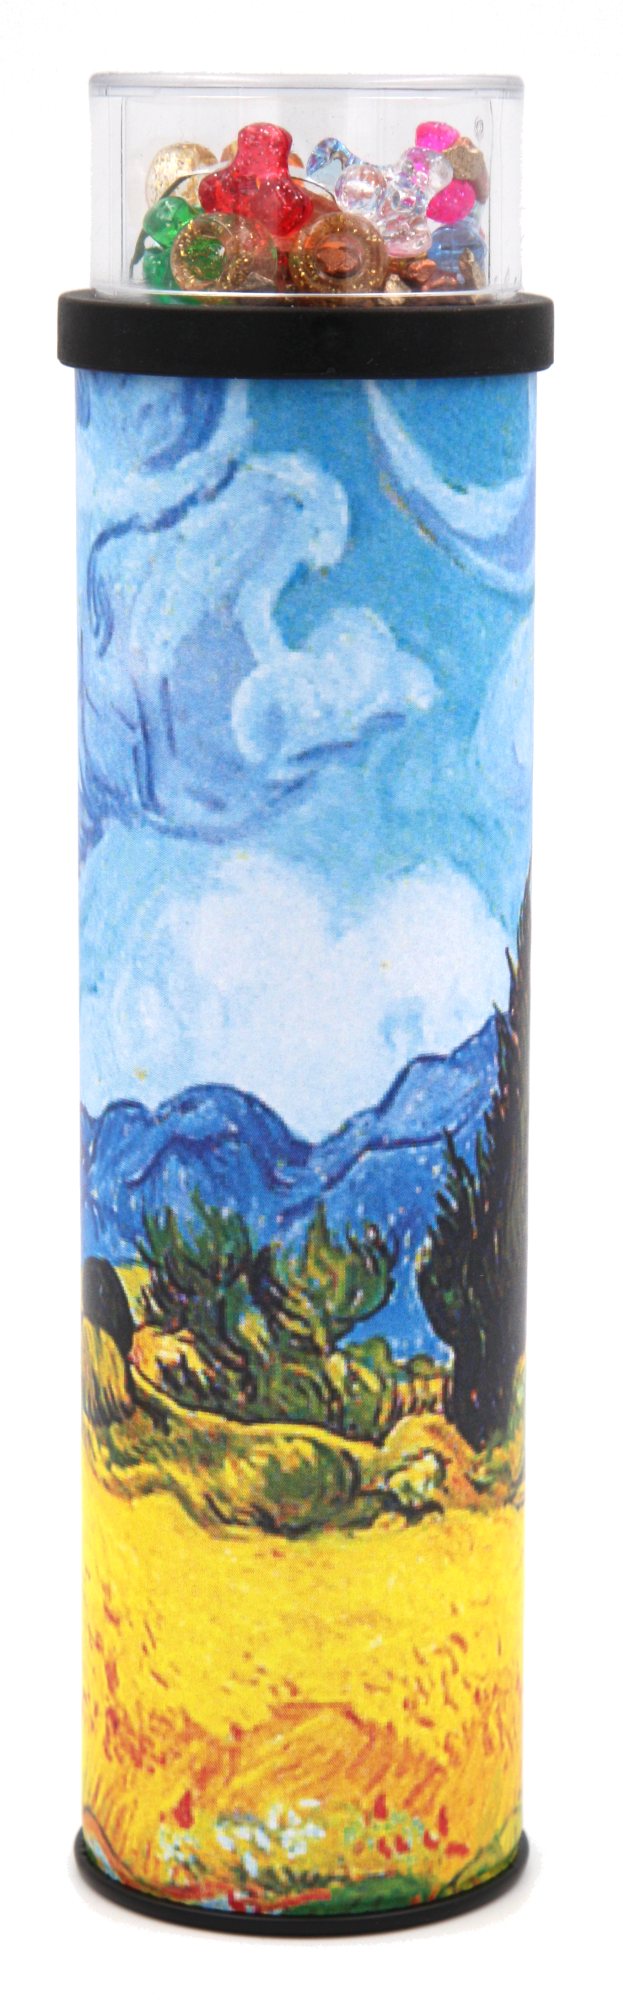 Kapsel-Kaleidoskop "Vincent van Gogh: Landschaft mit Zypressen"